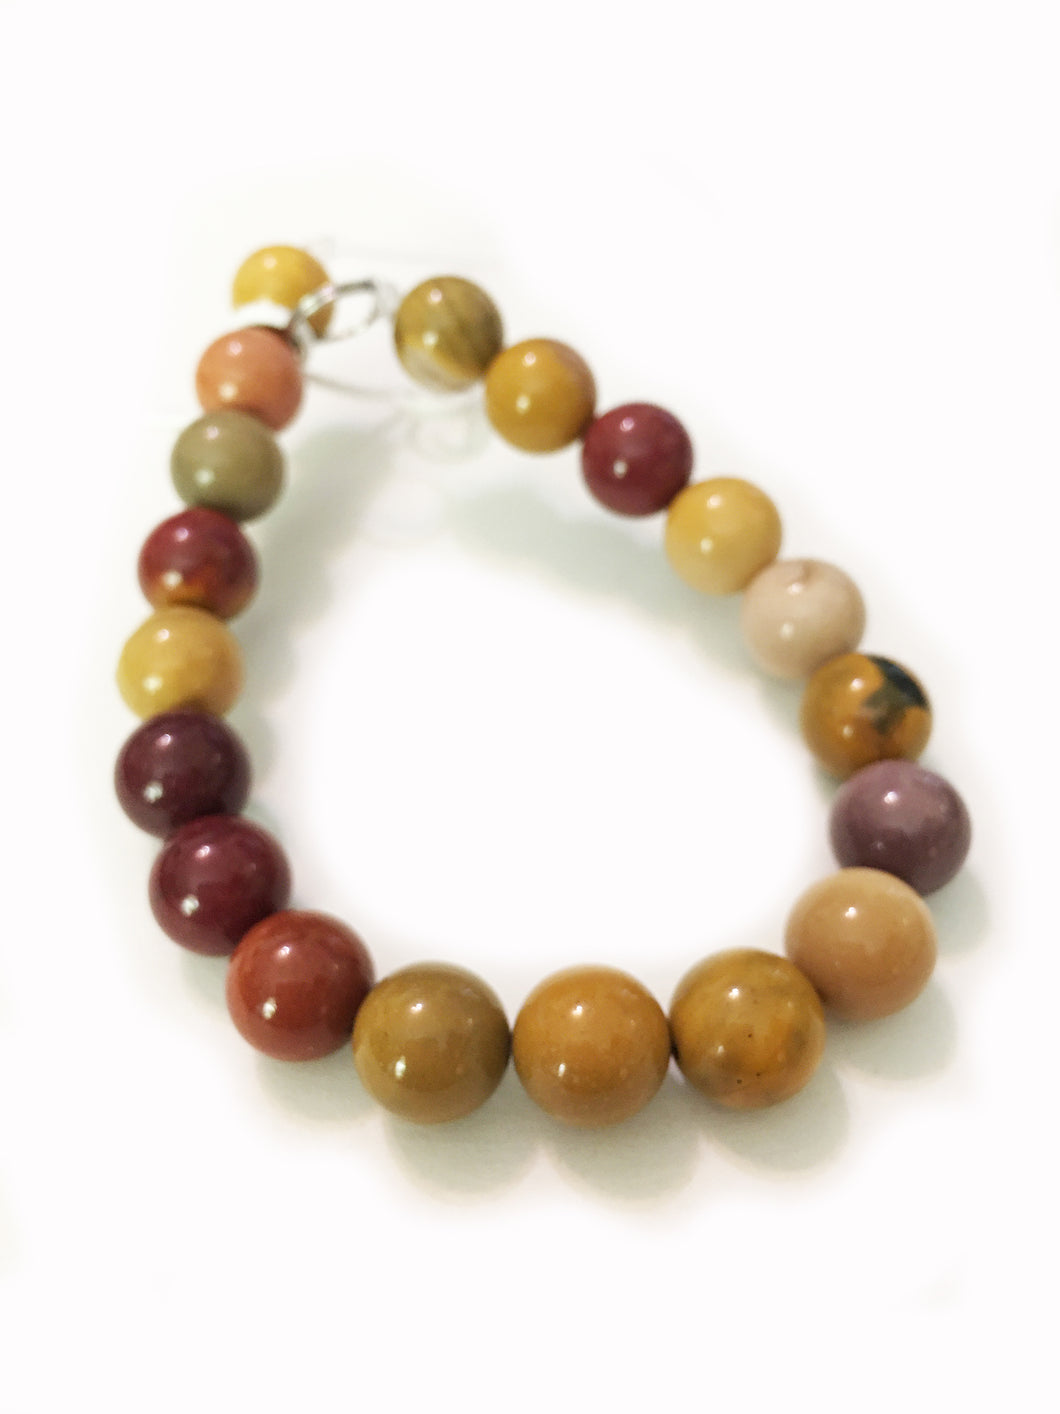 Mookaite Beads 10.5mm round beads - 8 inch strand